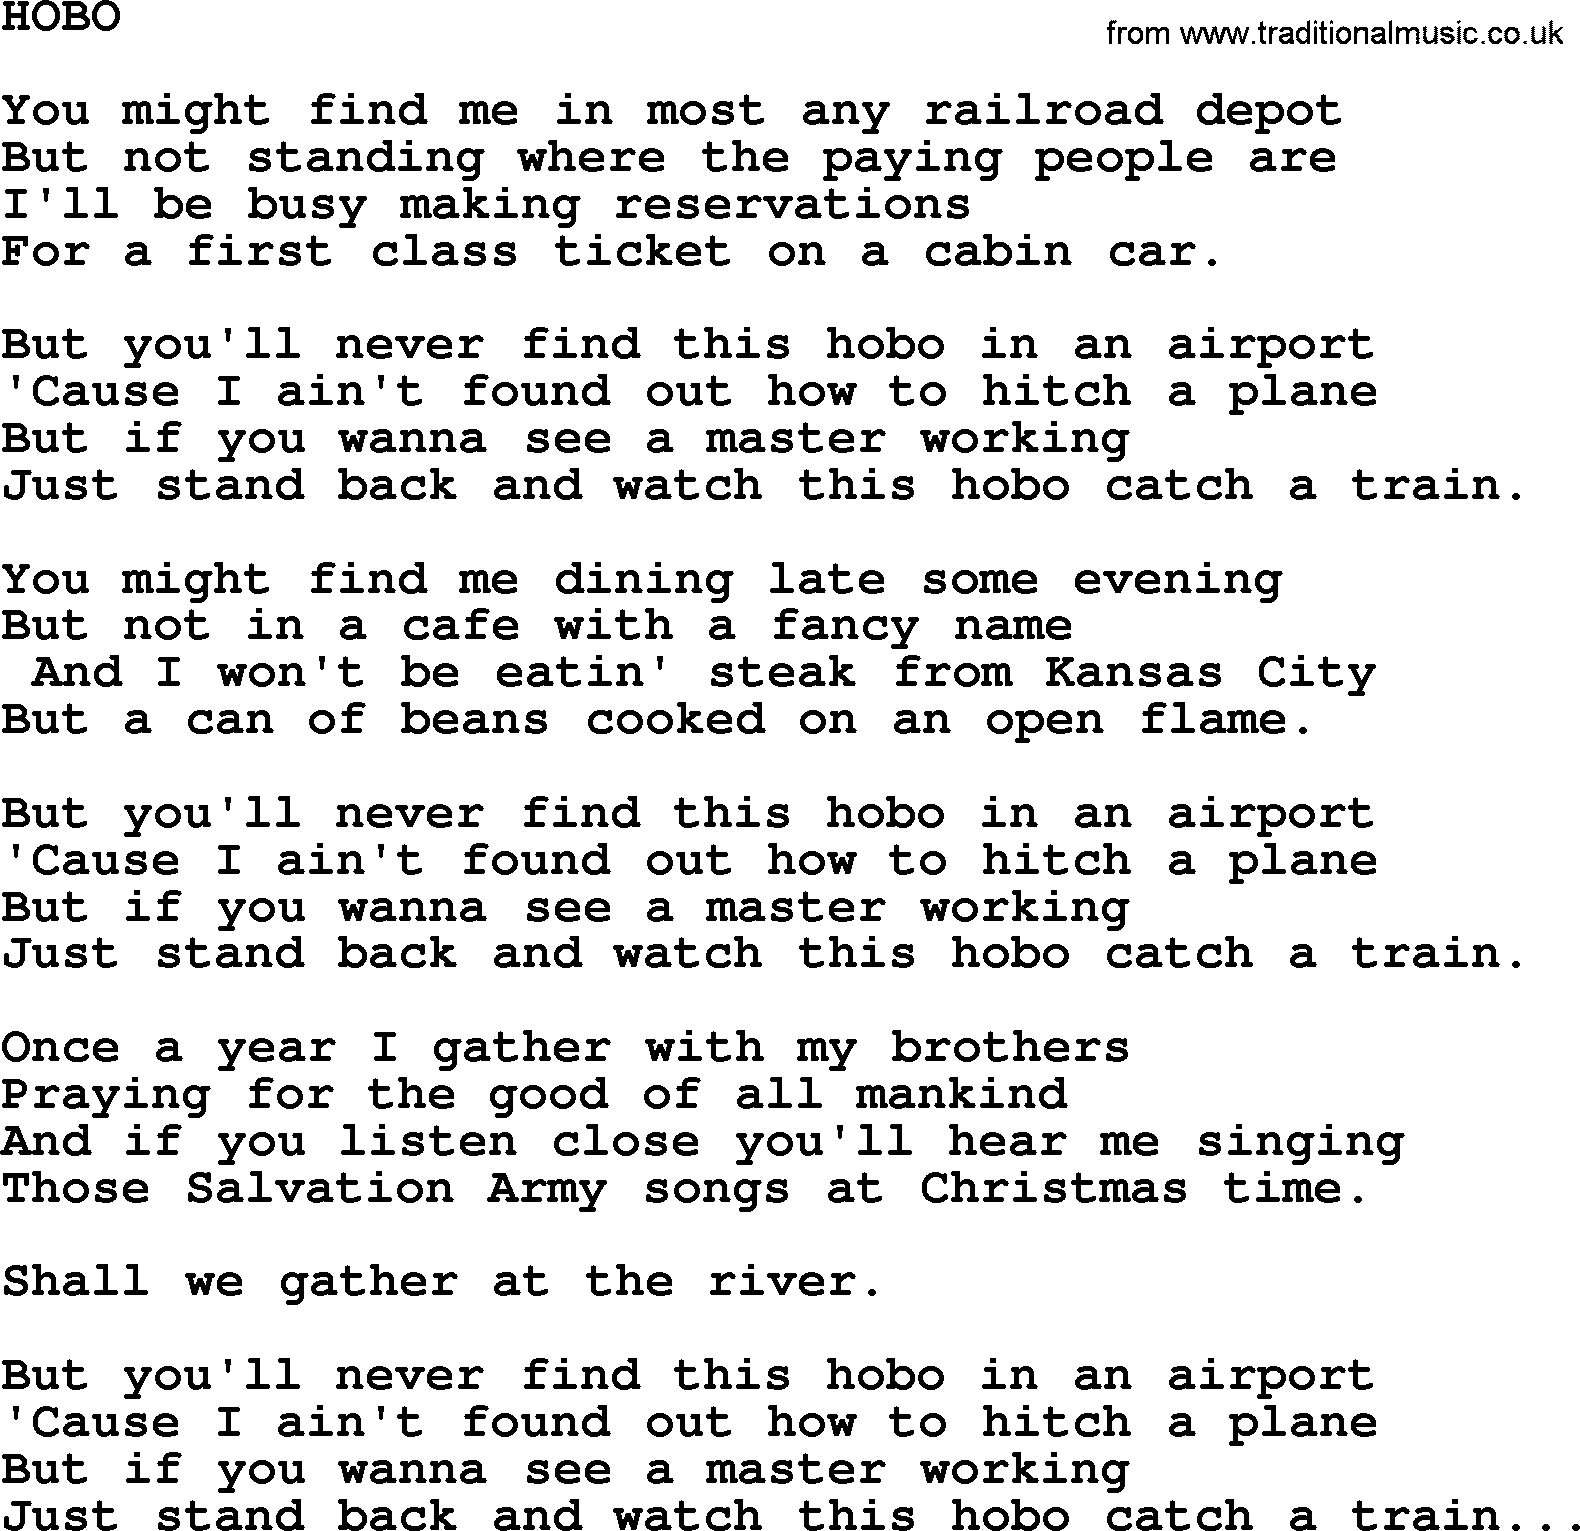 Merle Haggard song: Hobo, lyrics.